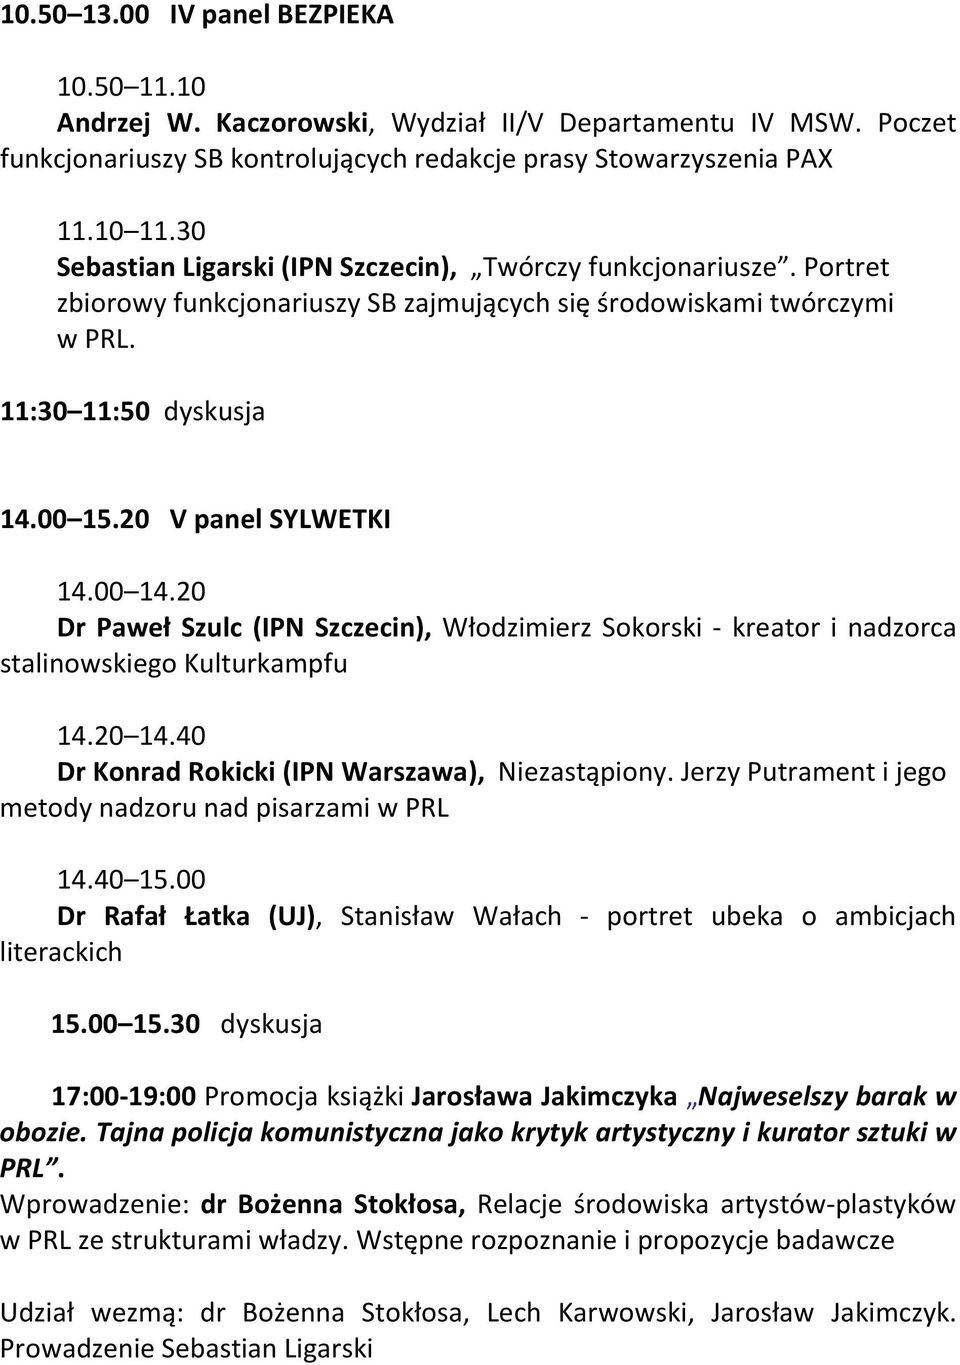 00 14.20 Dr Paweł Szulc (IPN Szczecin), Włodzimierz Sokorski - kreator i nadzorca stalinowskiego Kulturkampfu 14.20 14.40 Dr Konrad Rokicki (IPN Warszawa), Niezastąpiony.